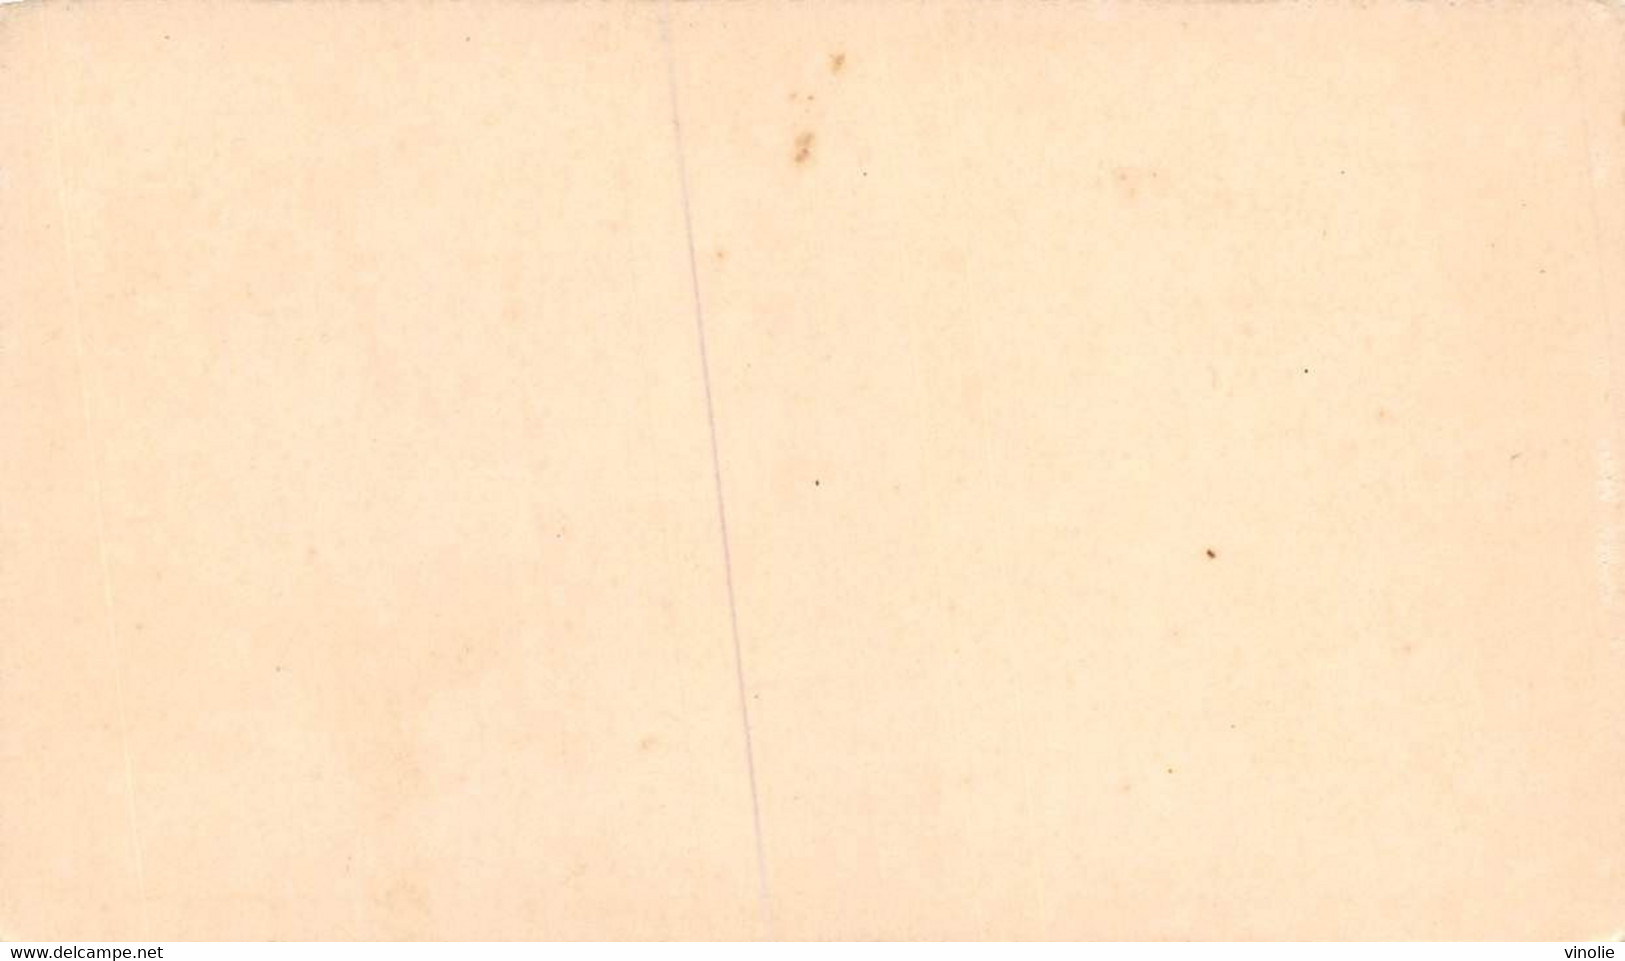 P.21-FO-1582 : IMAGE. CHROMOLITHOGRAPHIE. THEME MONNAIE. PIECE DE 5 F ARGENT. LOUIS PHILIPPE 1840 - Unclassified